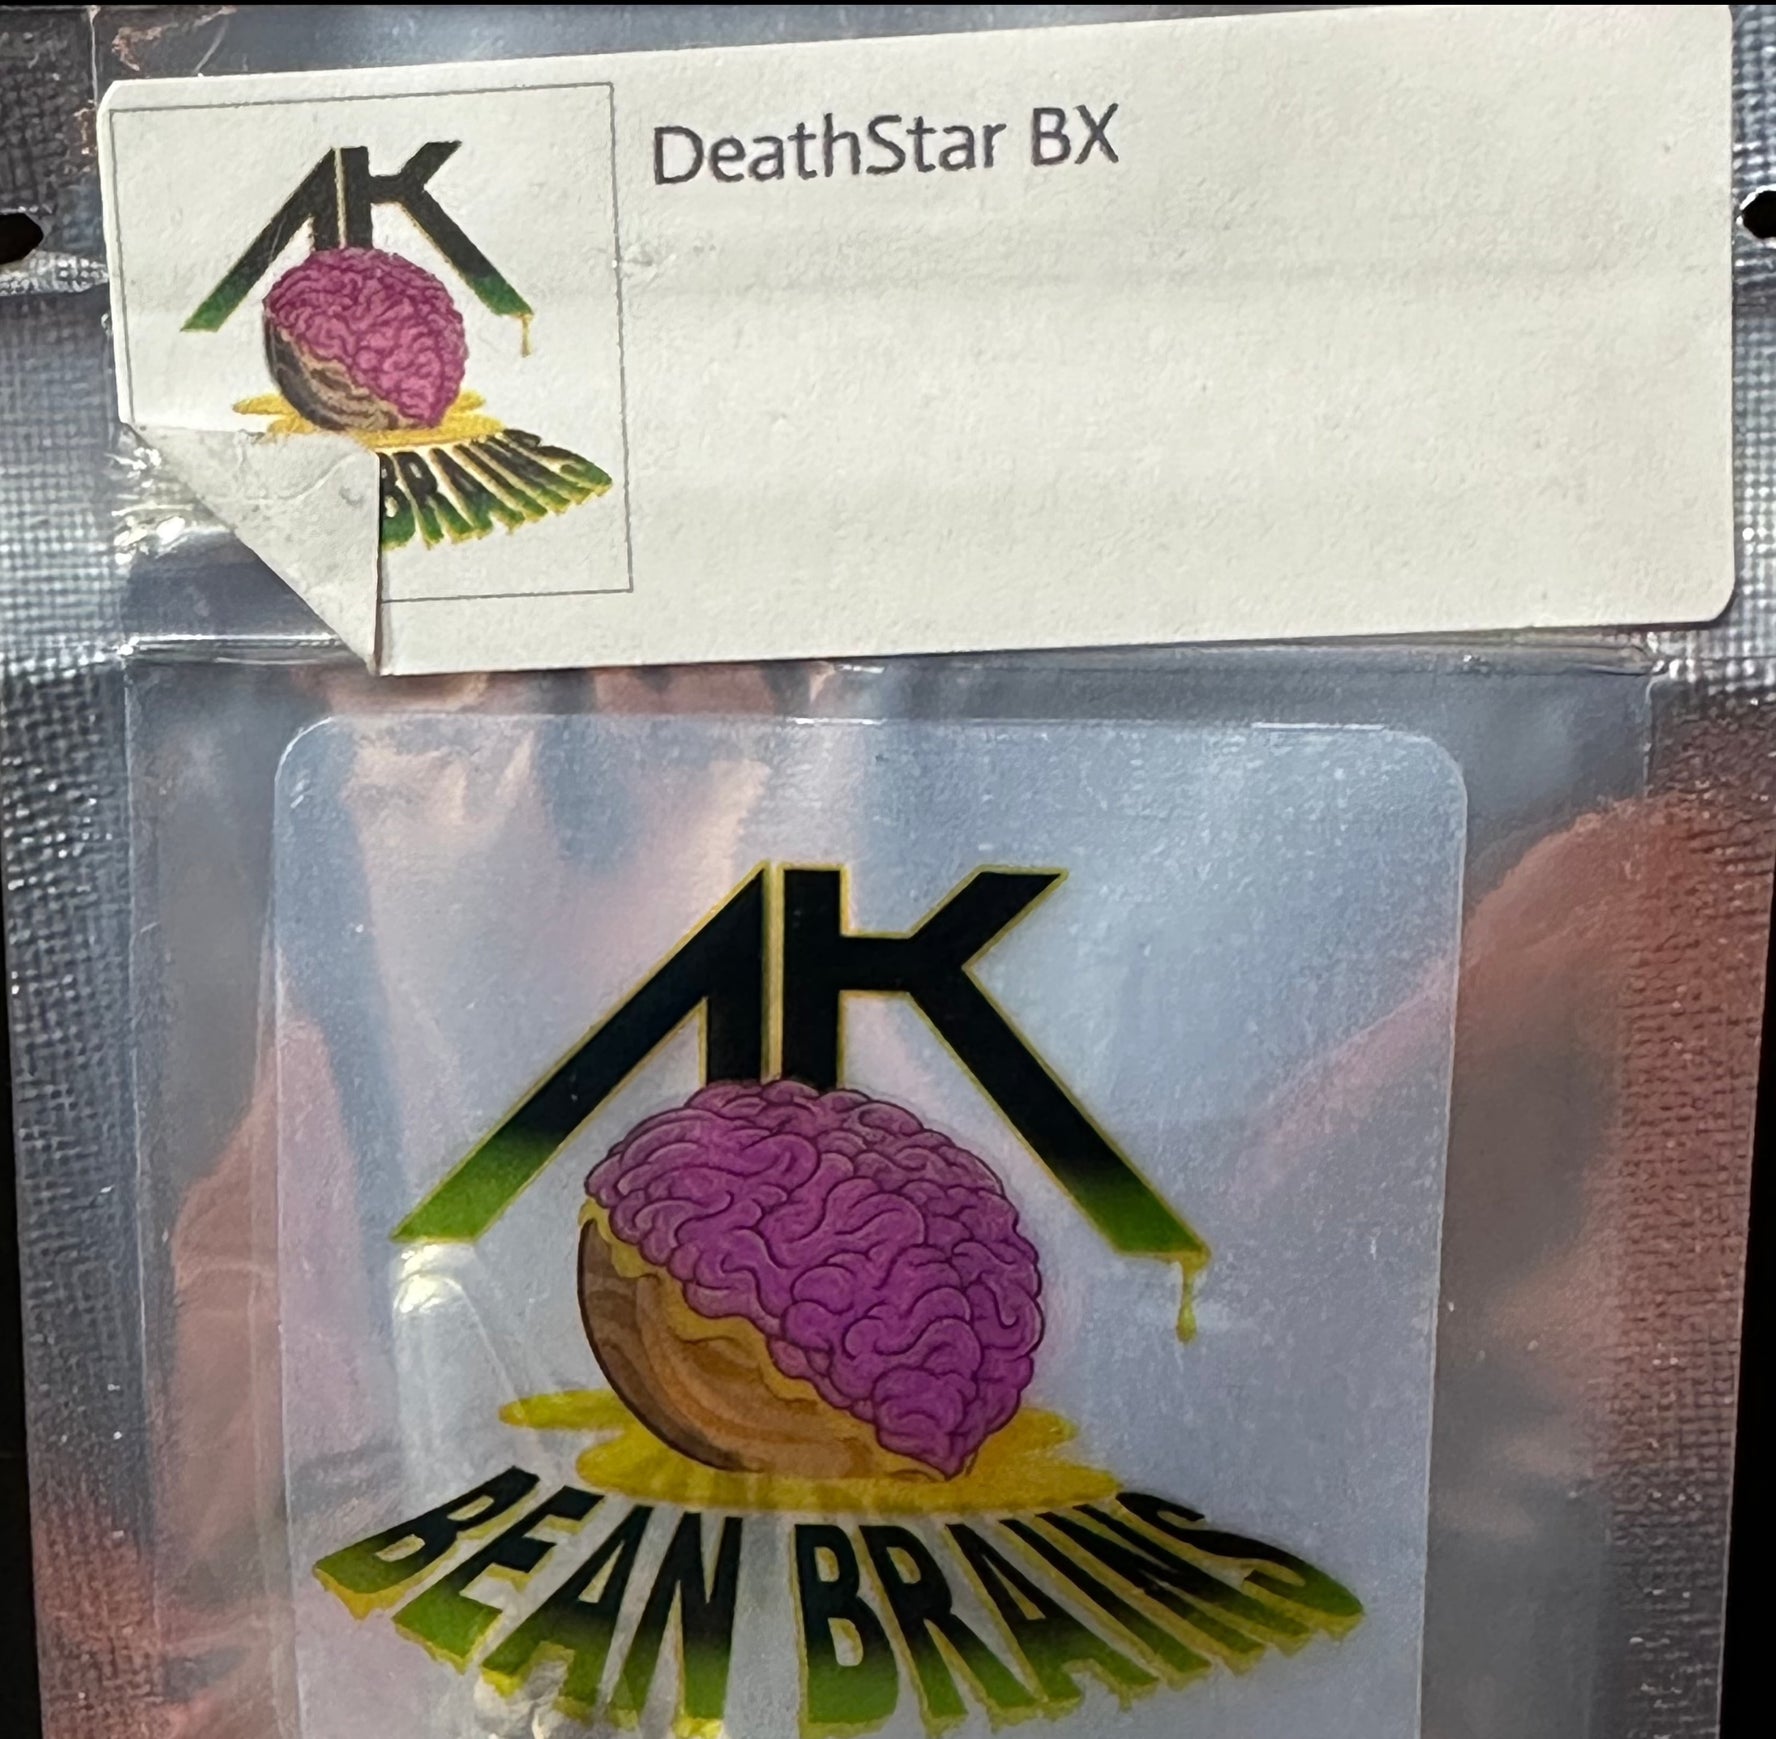 AK Bean Brains - DeathStar BX